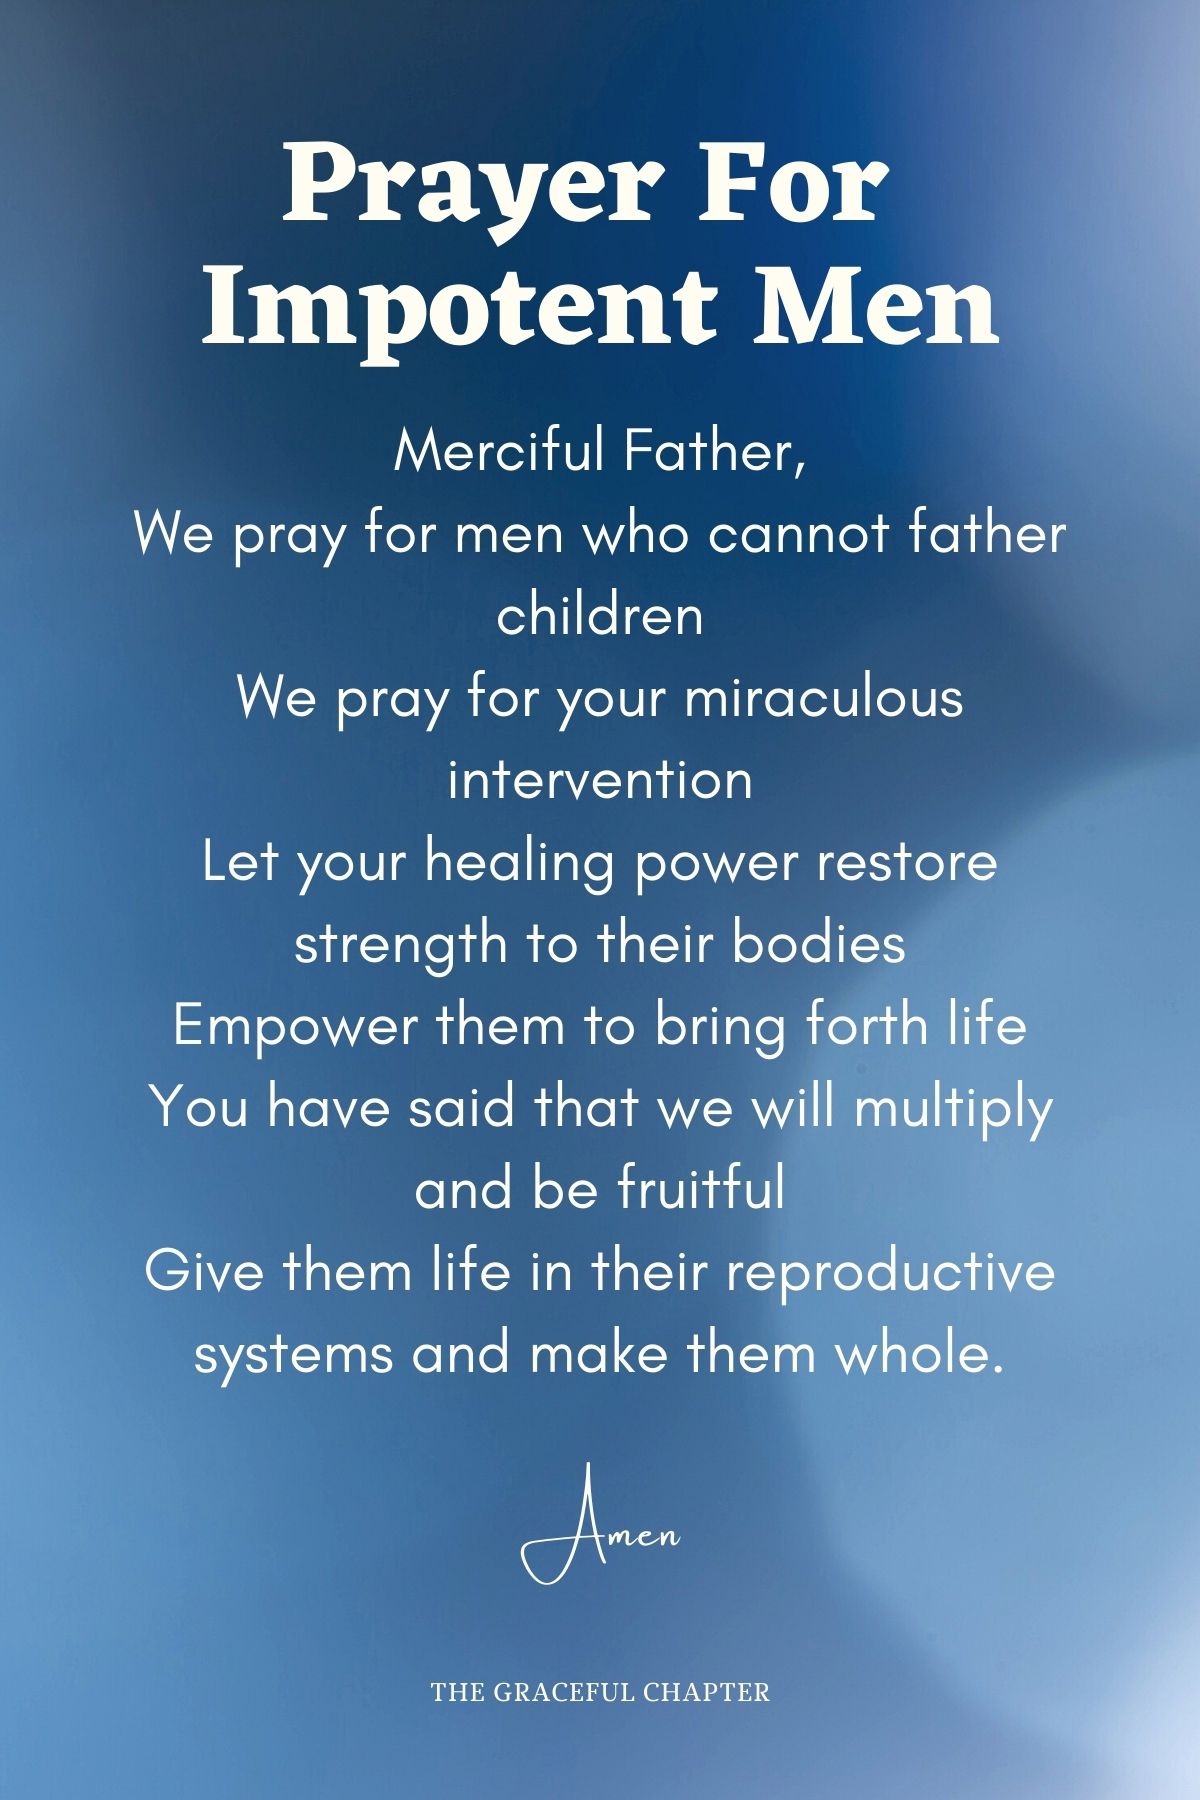 Prayer for impotent men